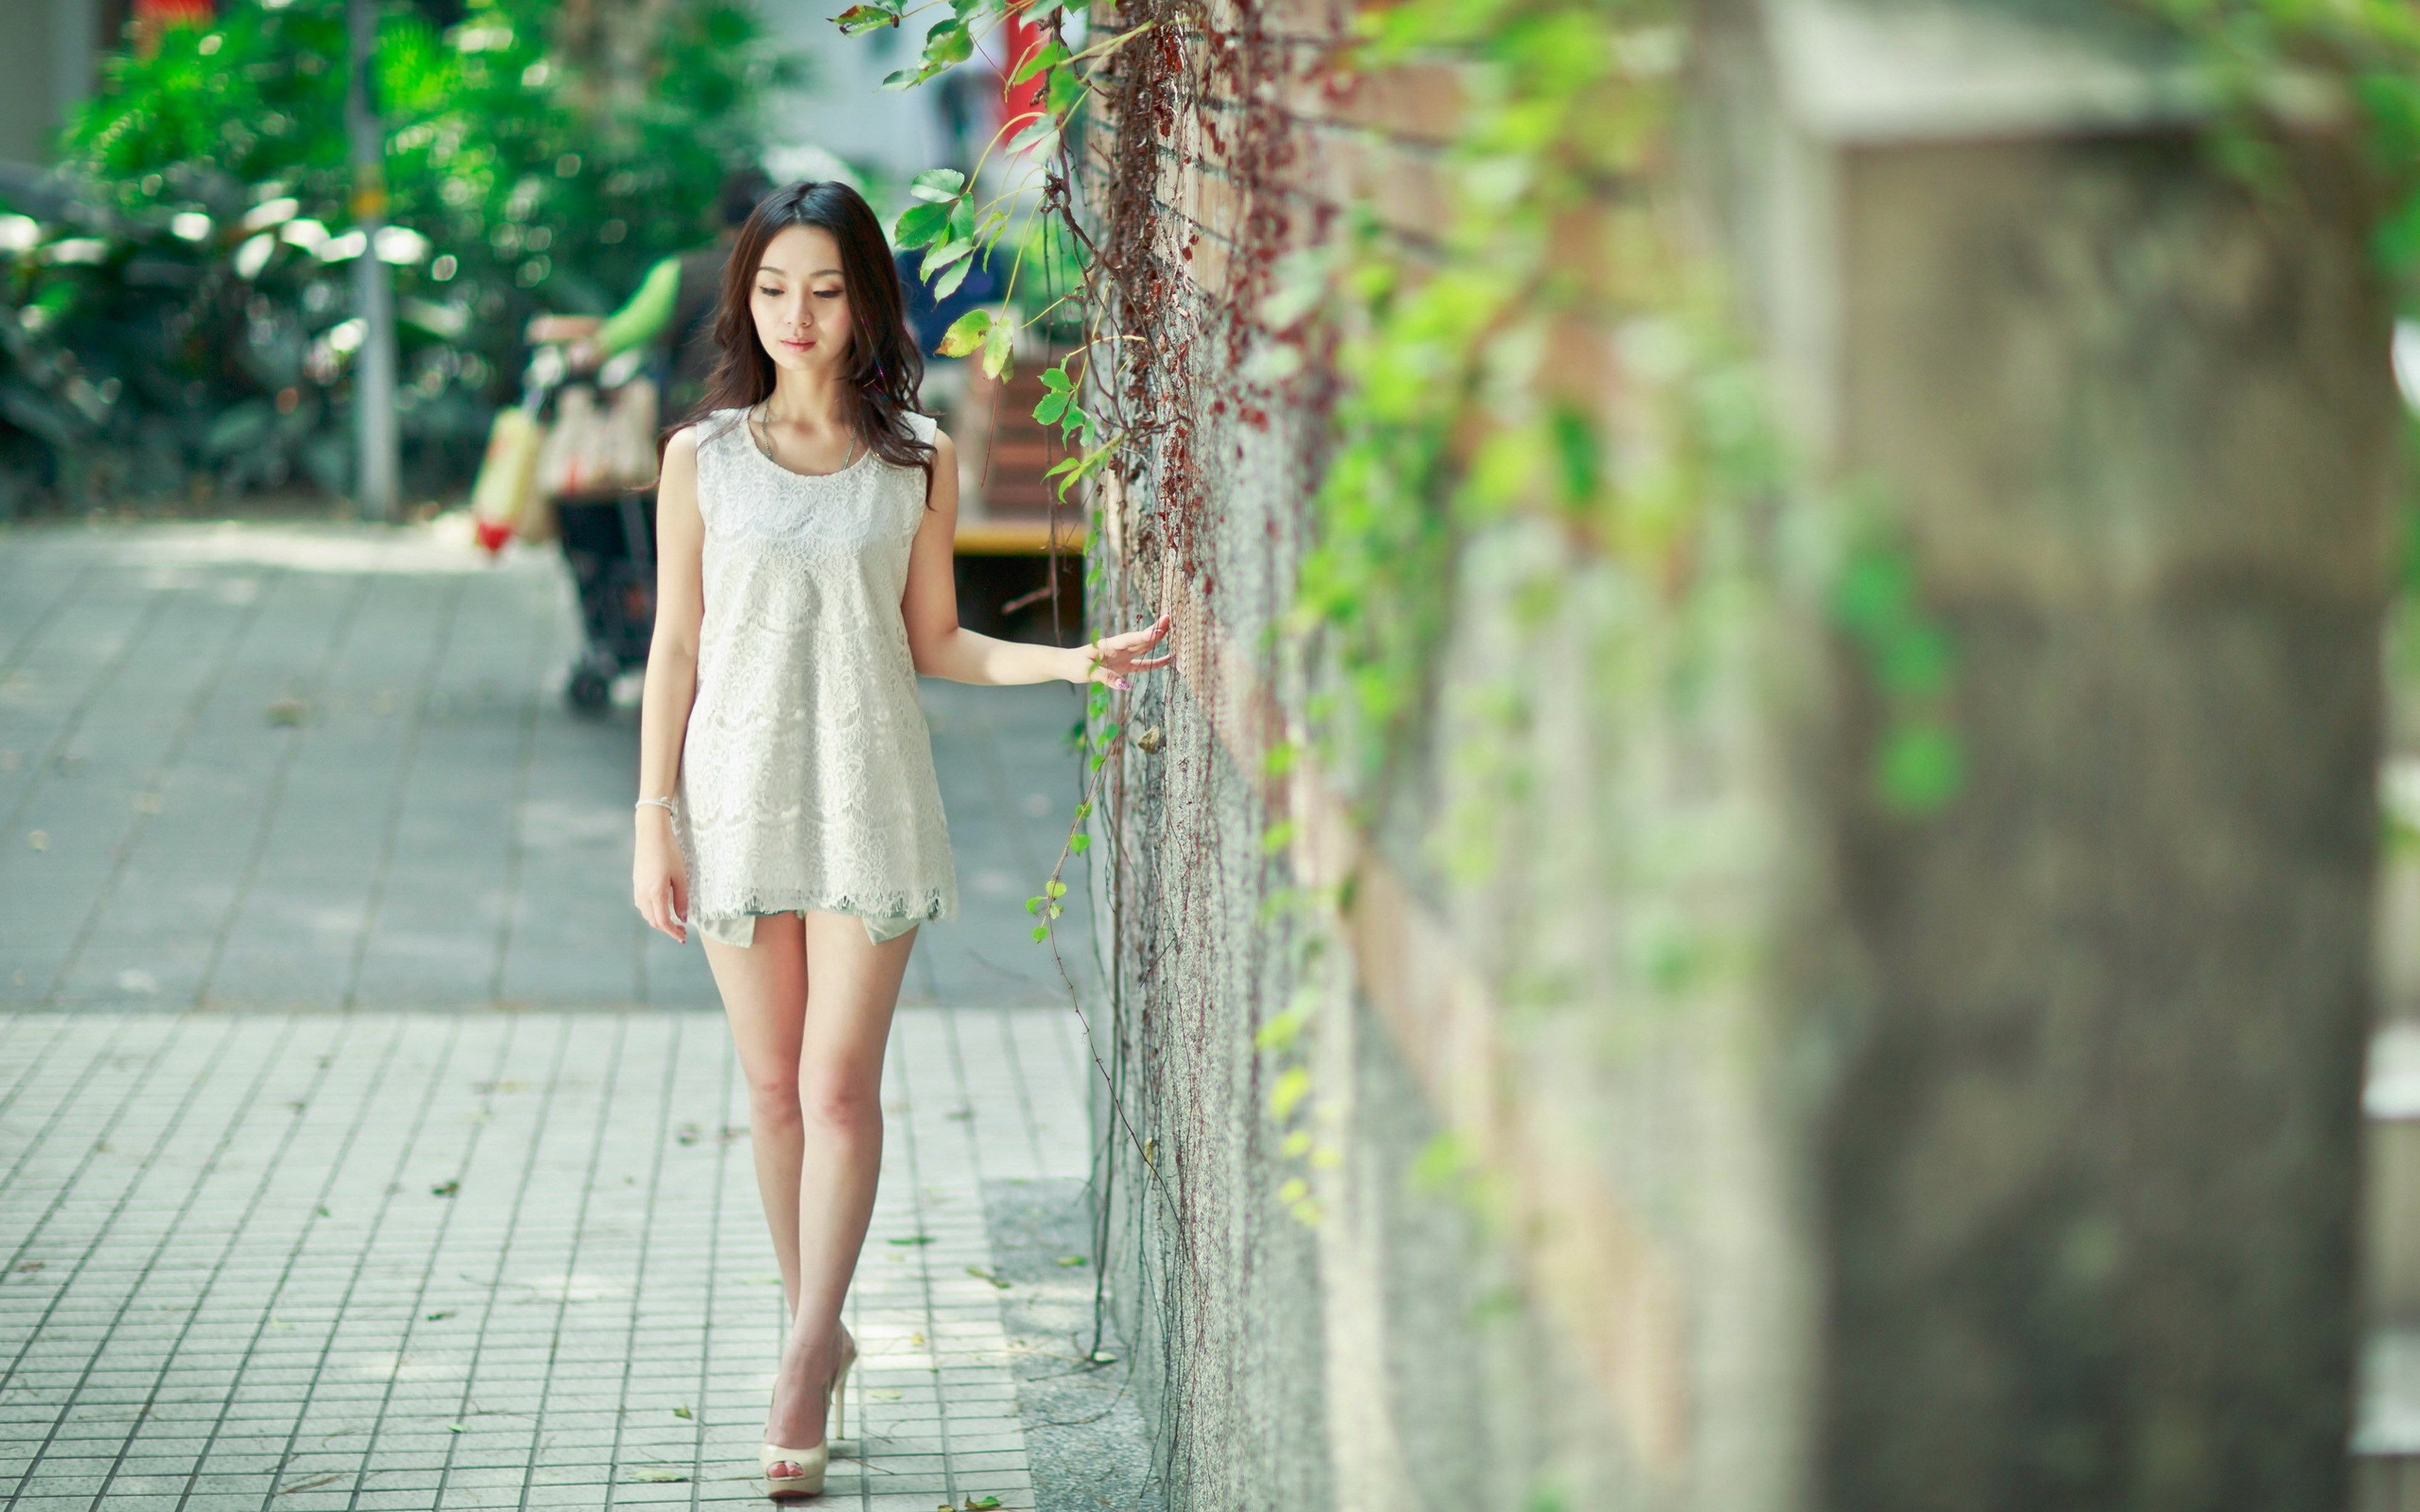 Korean Girl 4k Wallpapers - Wallpaper Cave